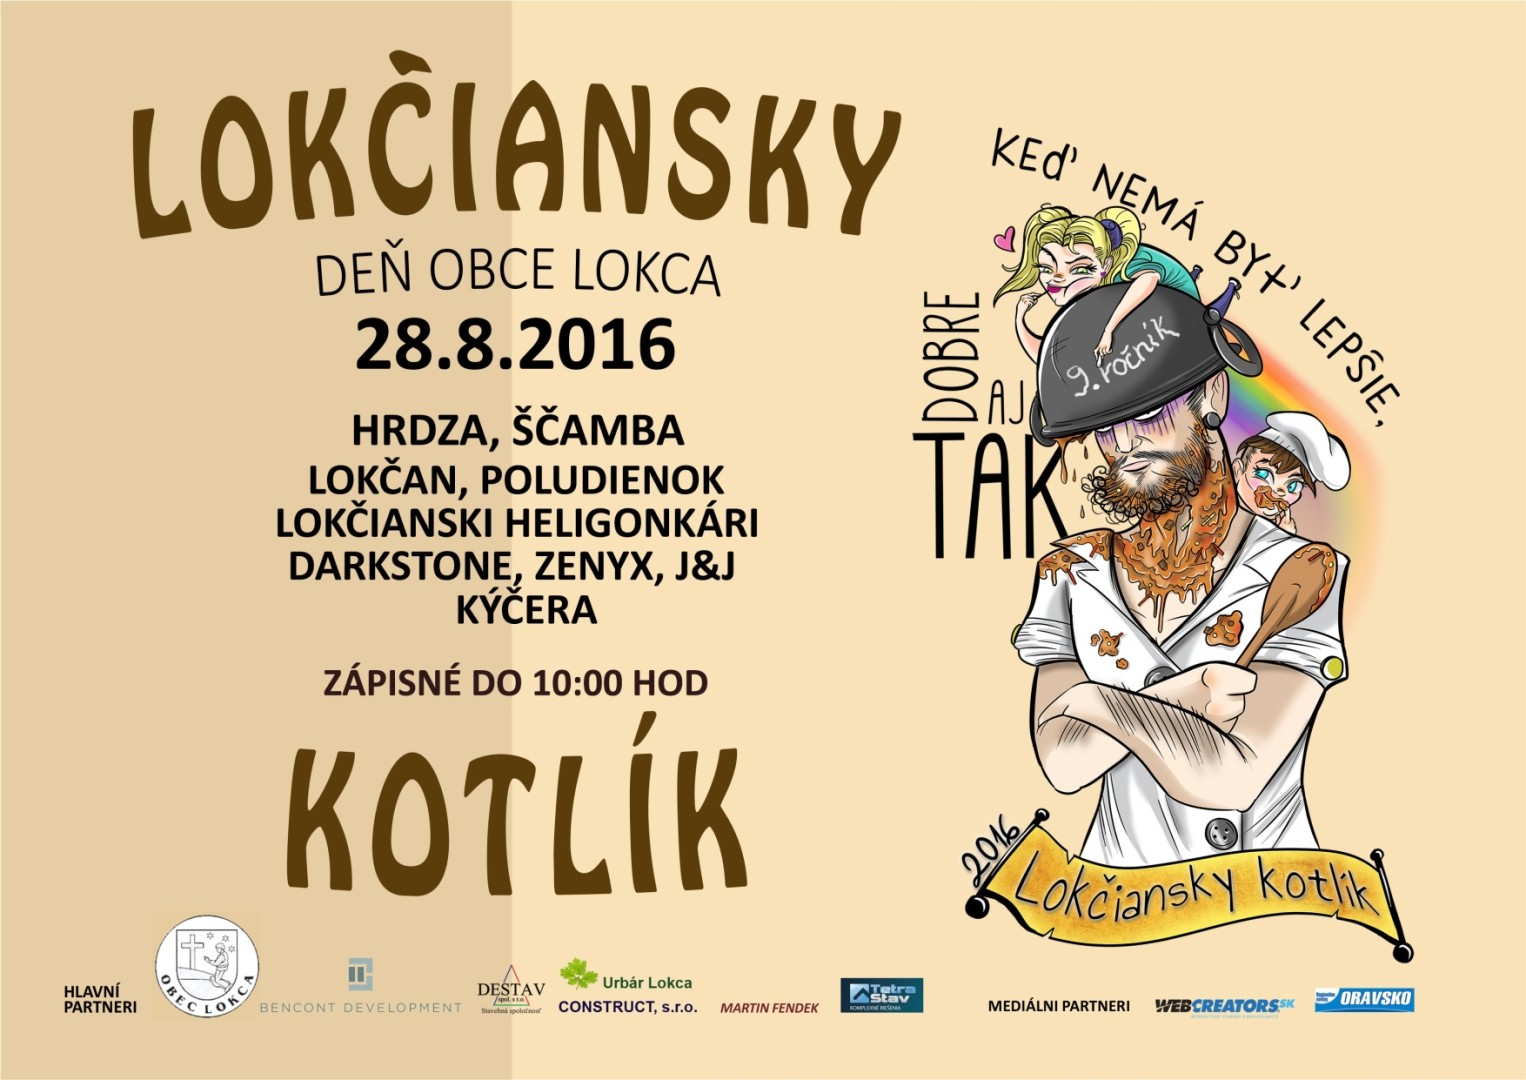 De obce Lokca 2016 a Lokiansky kotlk - 9. ronk